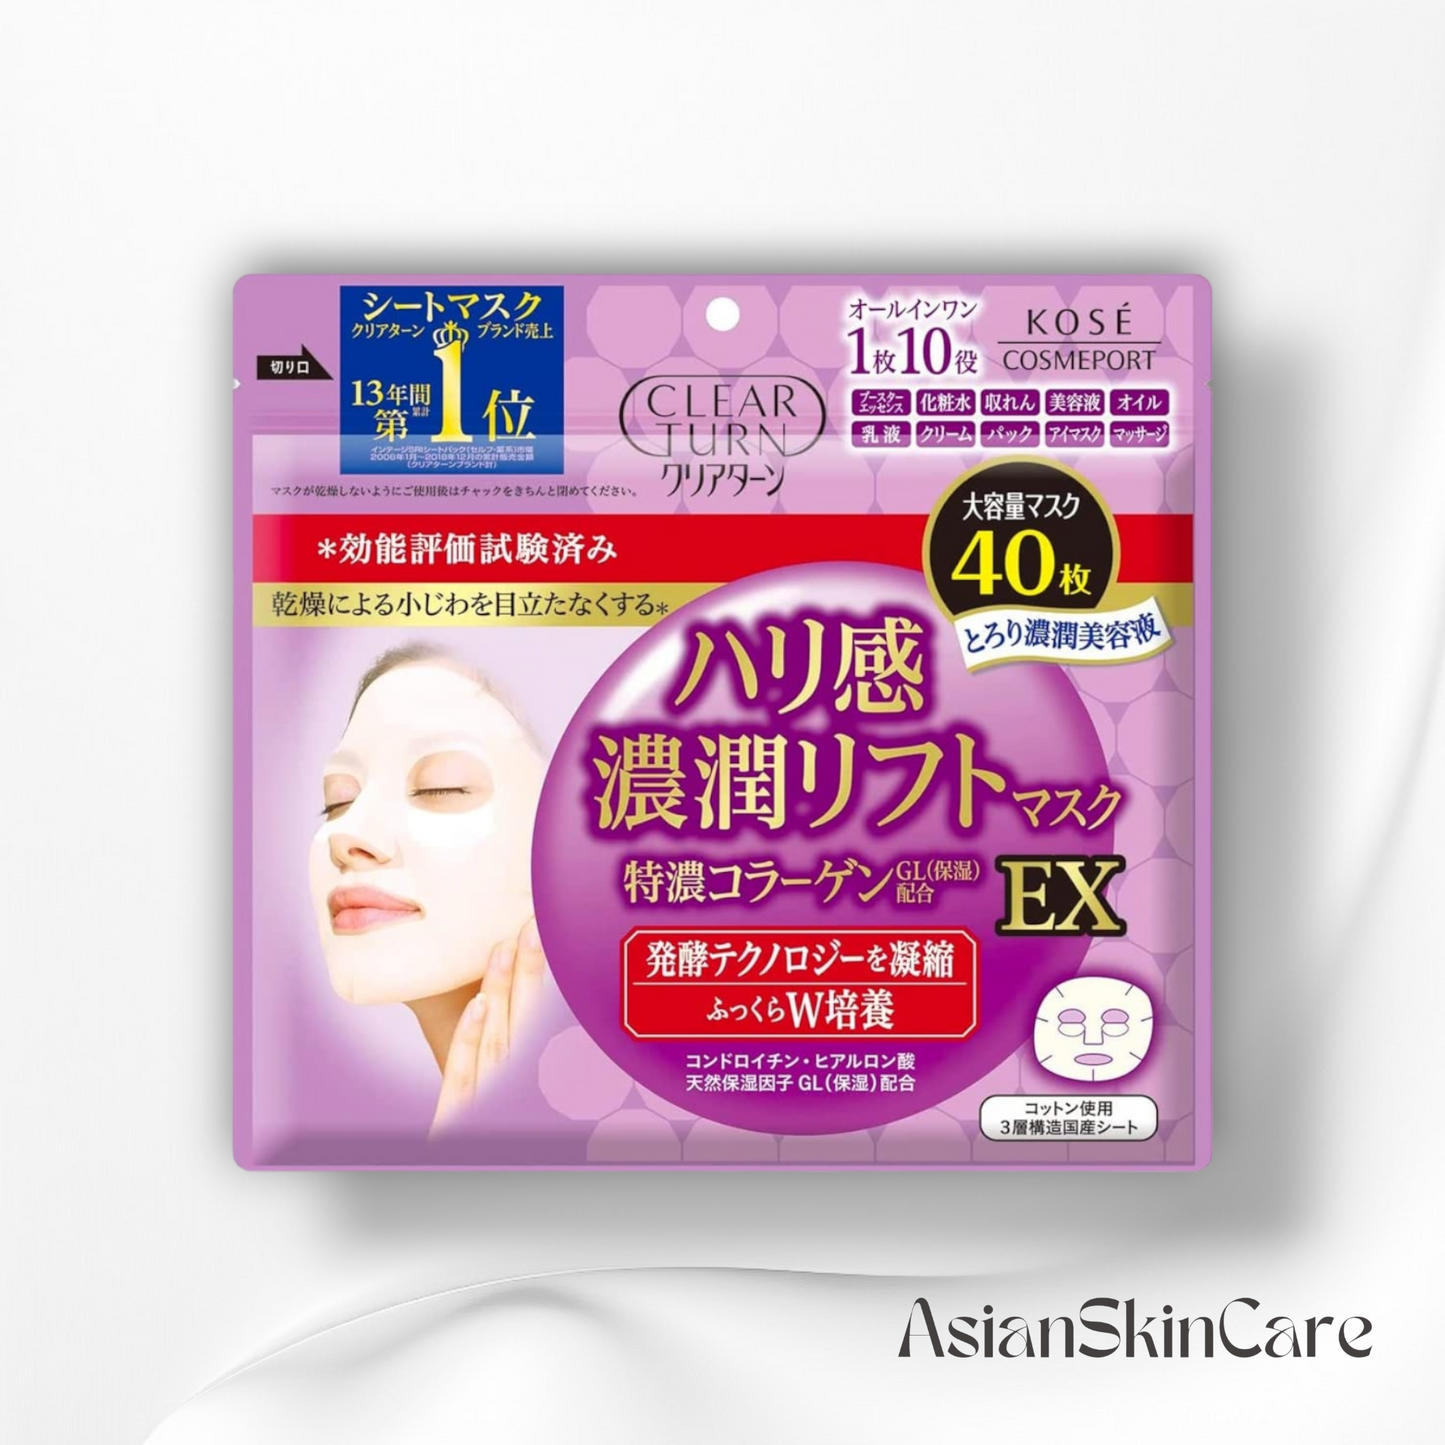 Kose Clear Turn Firm Lift Mask, EX Face Mask - 40 Sheets : Un pack de masques visage pour une peau revitalisée et nourrie